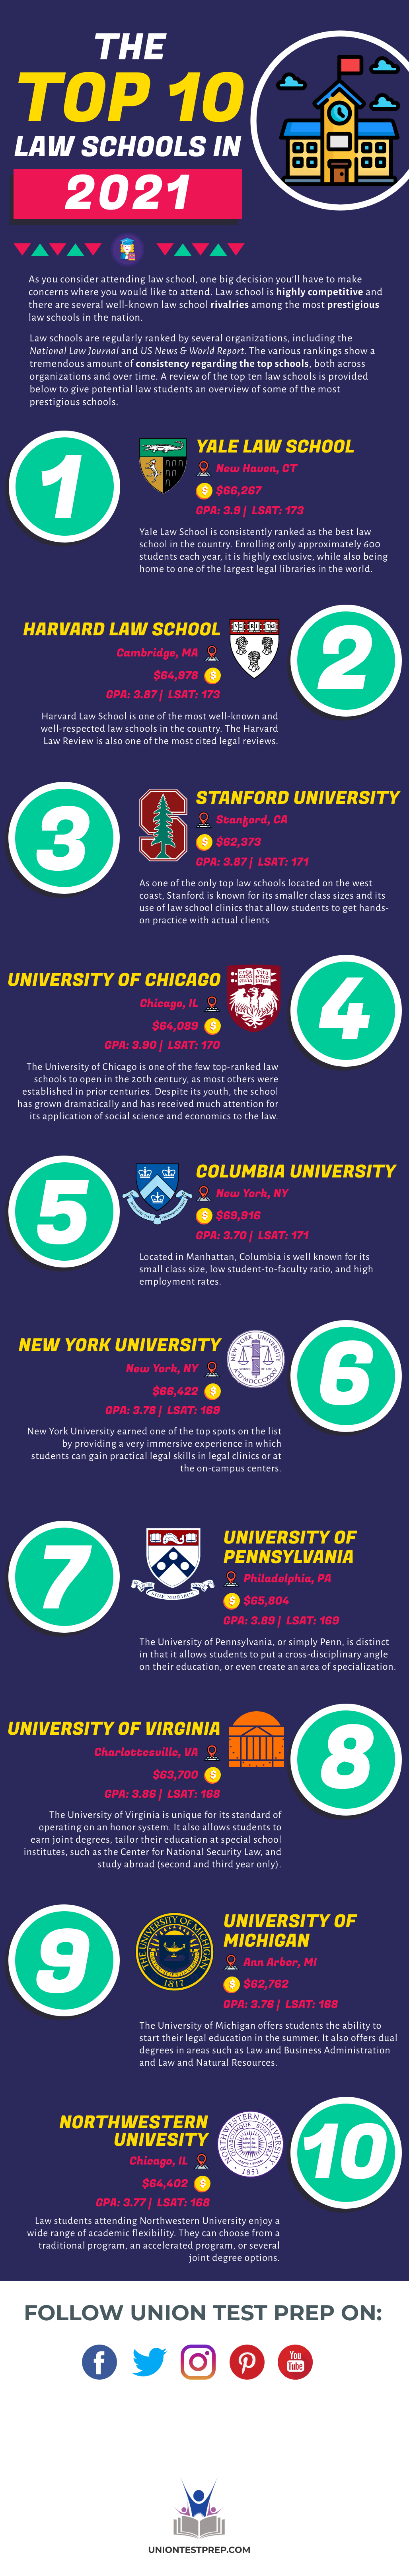 Top 10 Law Schools